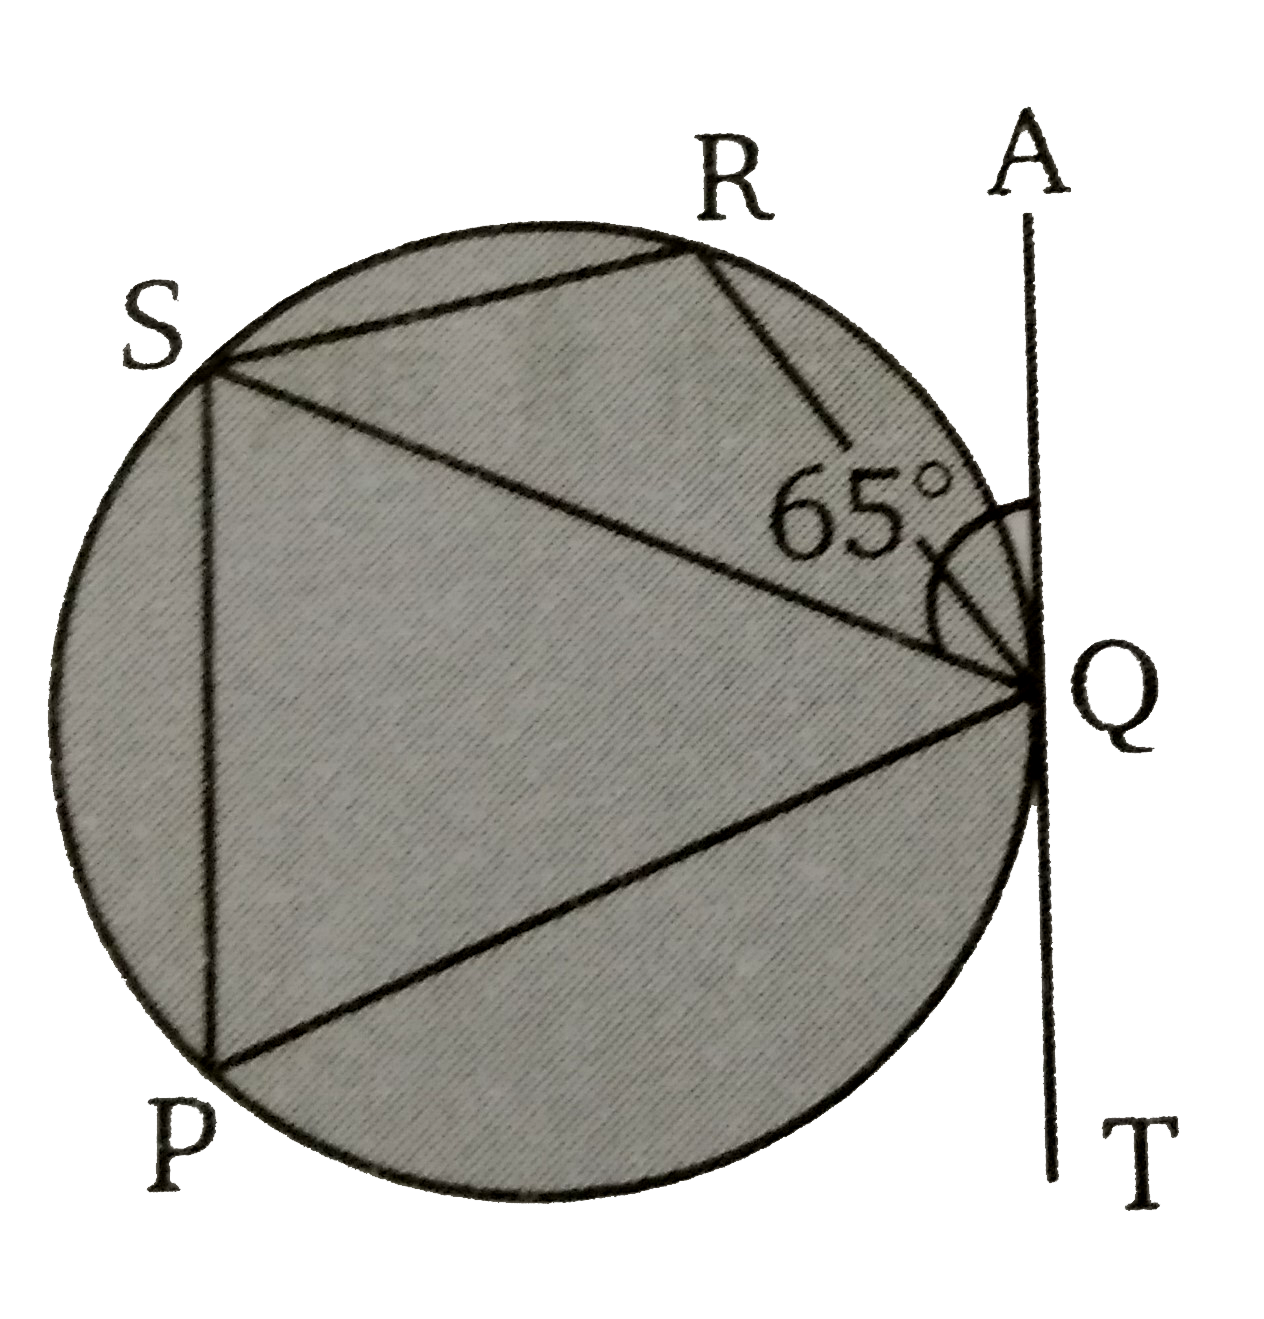 दिये गये चित्र में , PQRS   एक चक्रीय चतुर्भुज है। वृत्त के एक बिन्दु Q पर एक स्पर्शी AQT  खींची जाती है। यदि angleSQA = 65^(@)  तब angle QRS  की माप  ज्ञात कीजिए ।